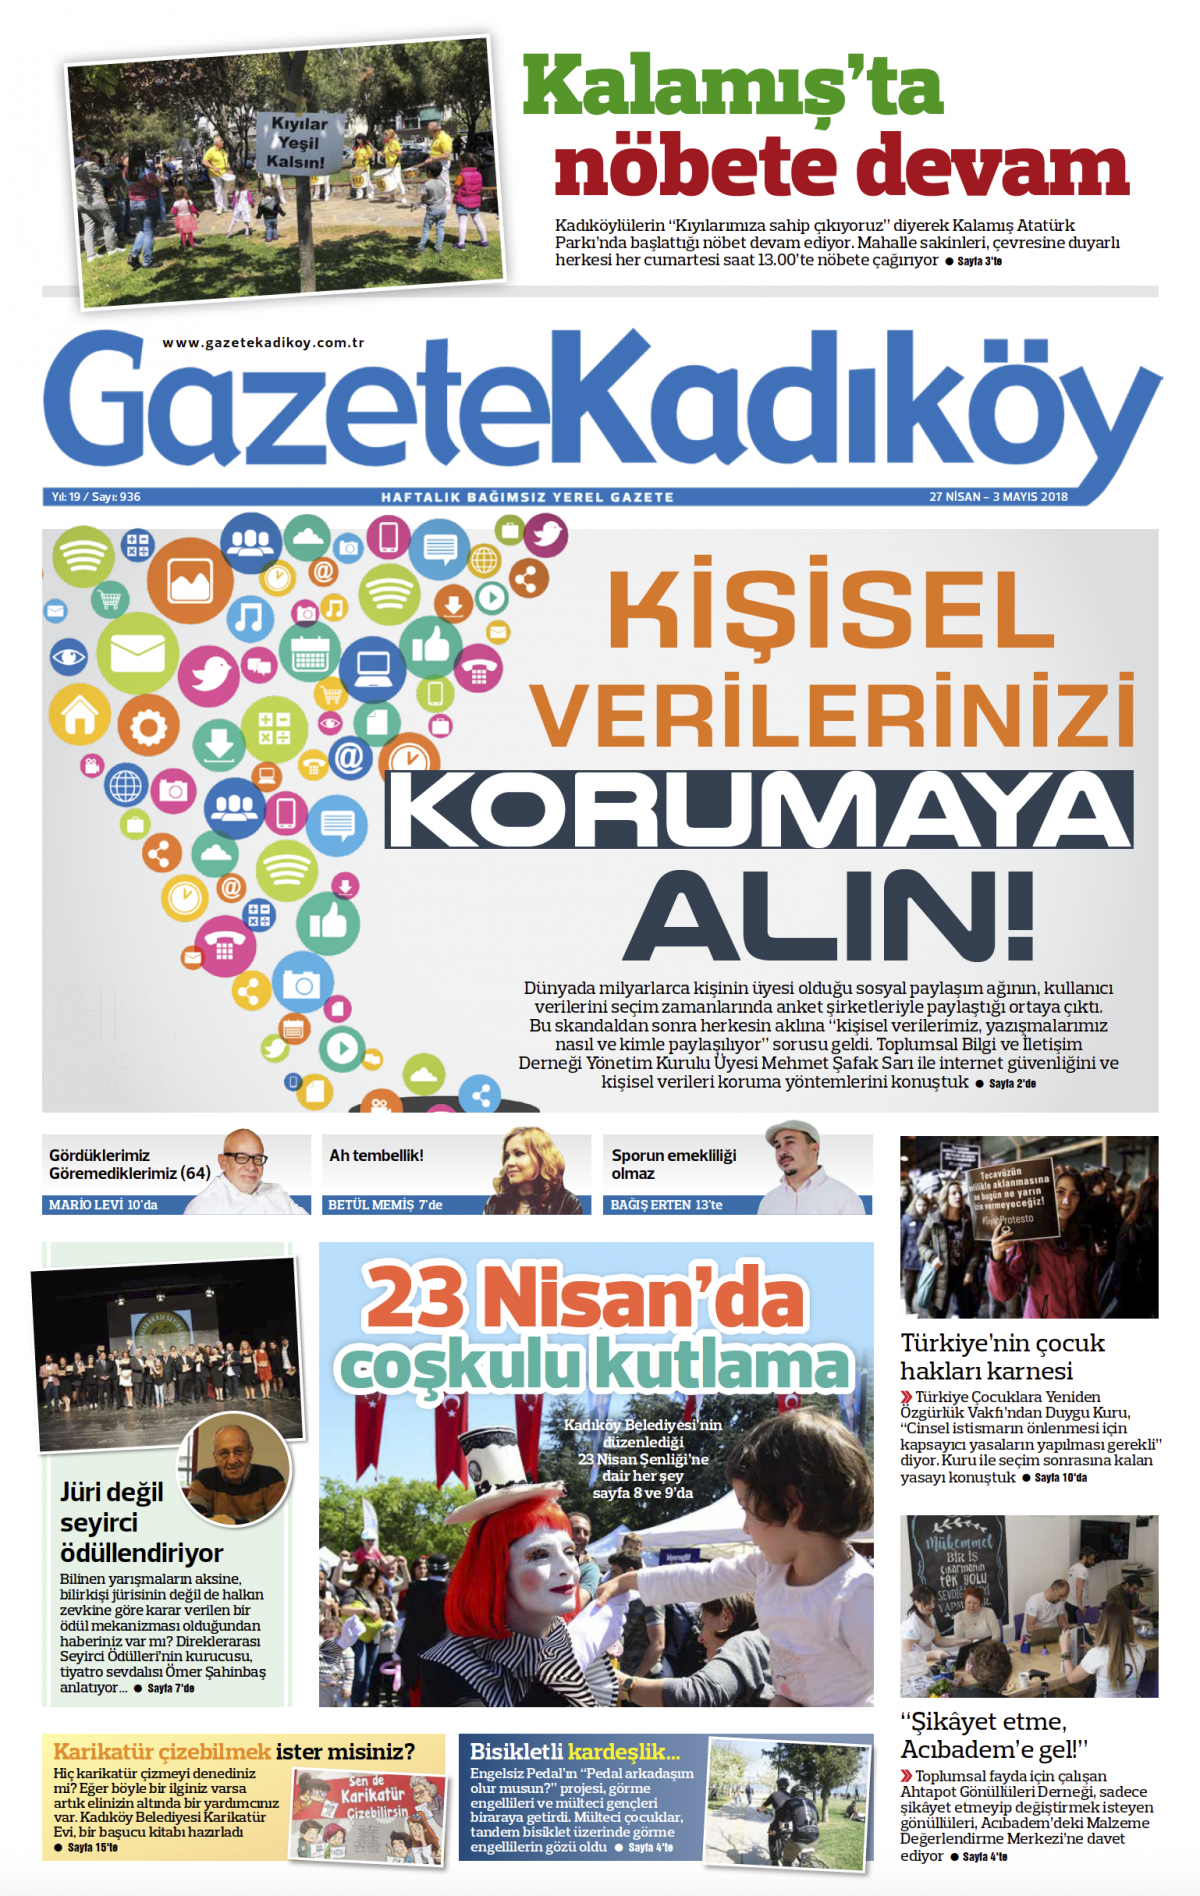 Gazete Kadıköy - 936. SAYI